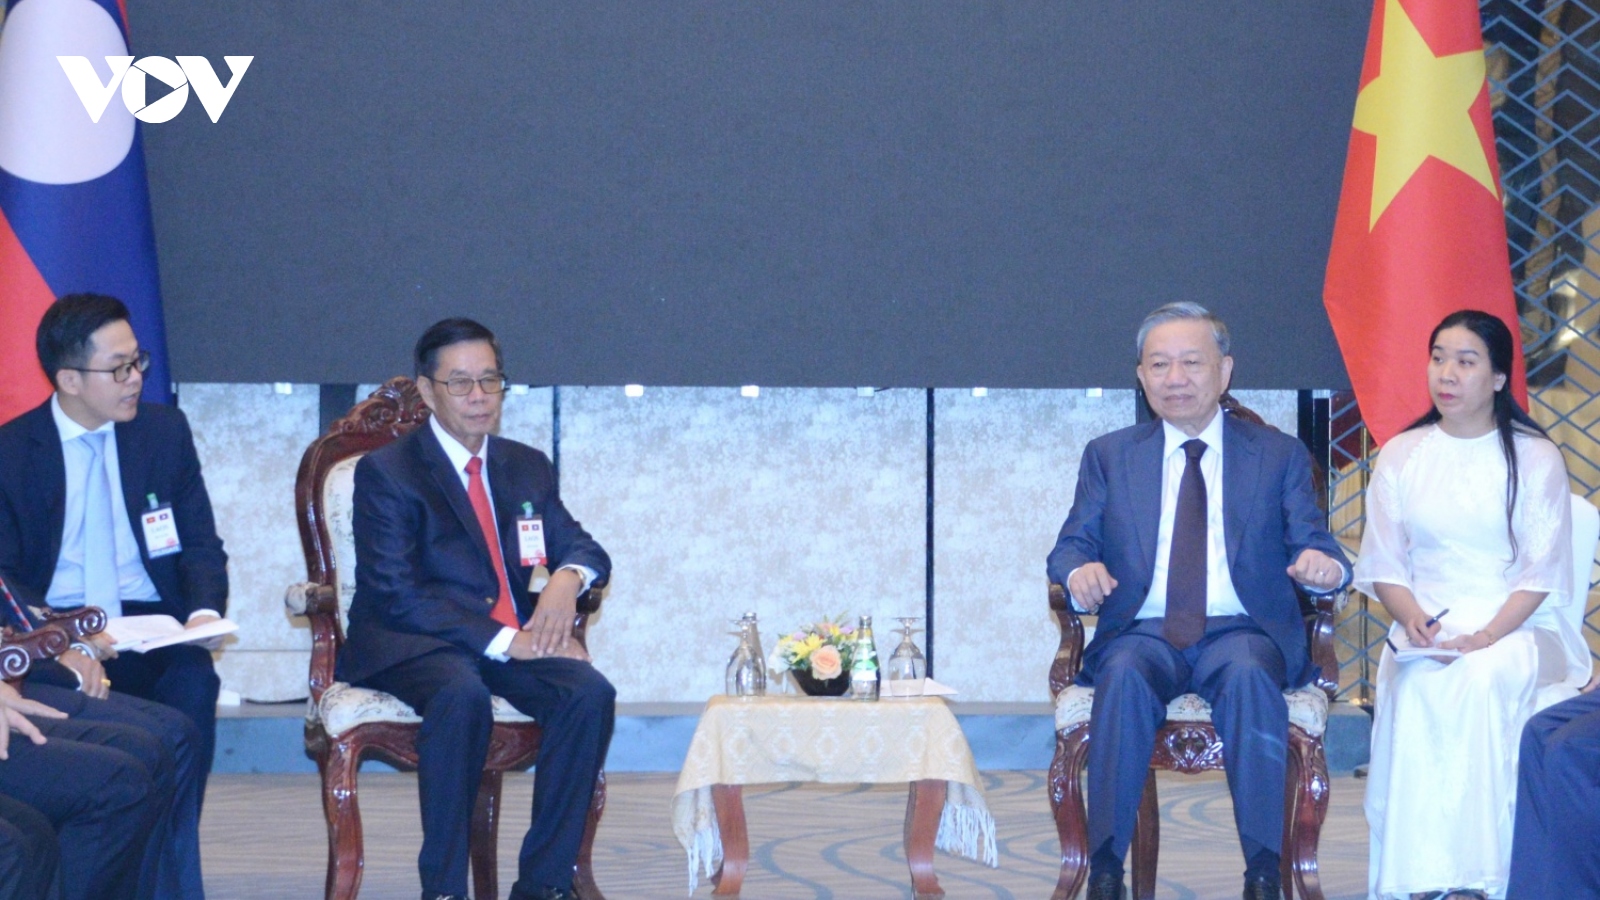 Chủ tịch nước Tô Lâm tiếp Chủ tịch Mặt trận Lào xây dựng đất nước